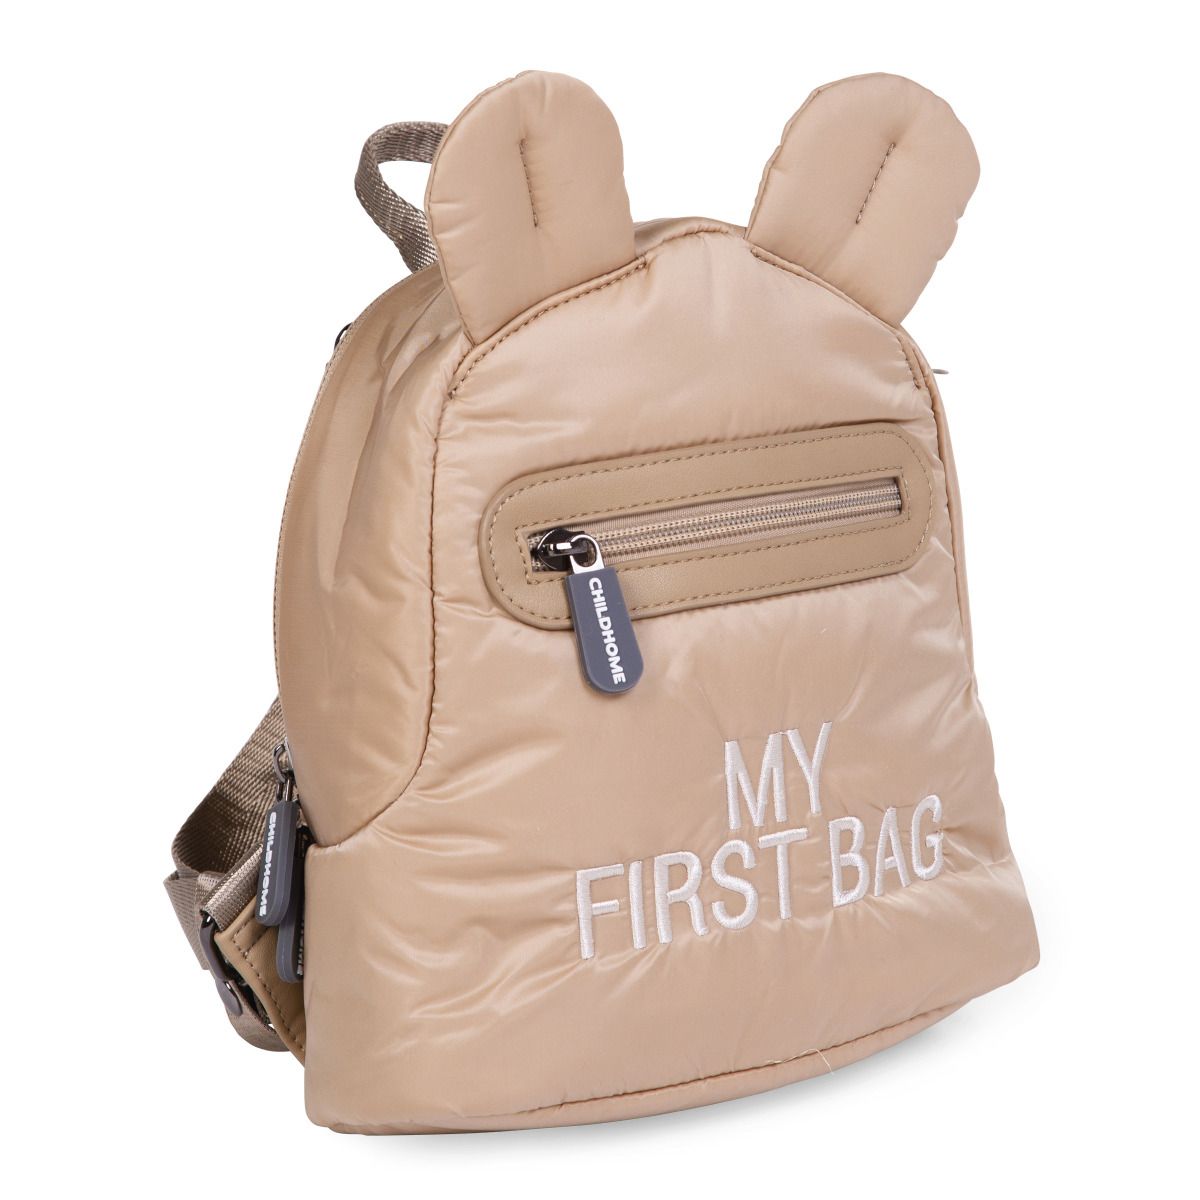 Дитячий рюкзак Childhome My first bag, бежевий (CWKIDBPBE) - фото 1